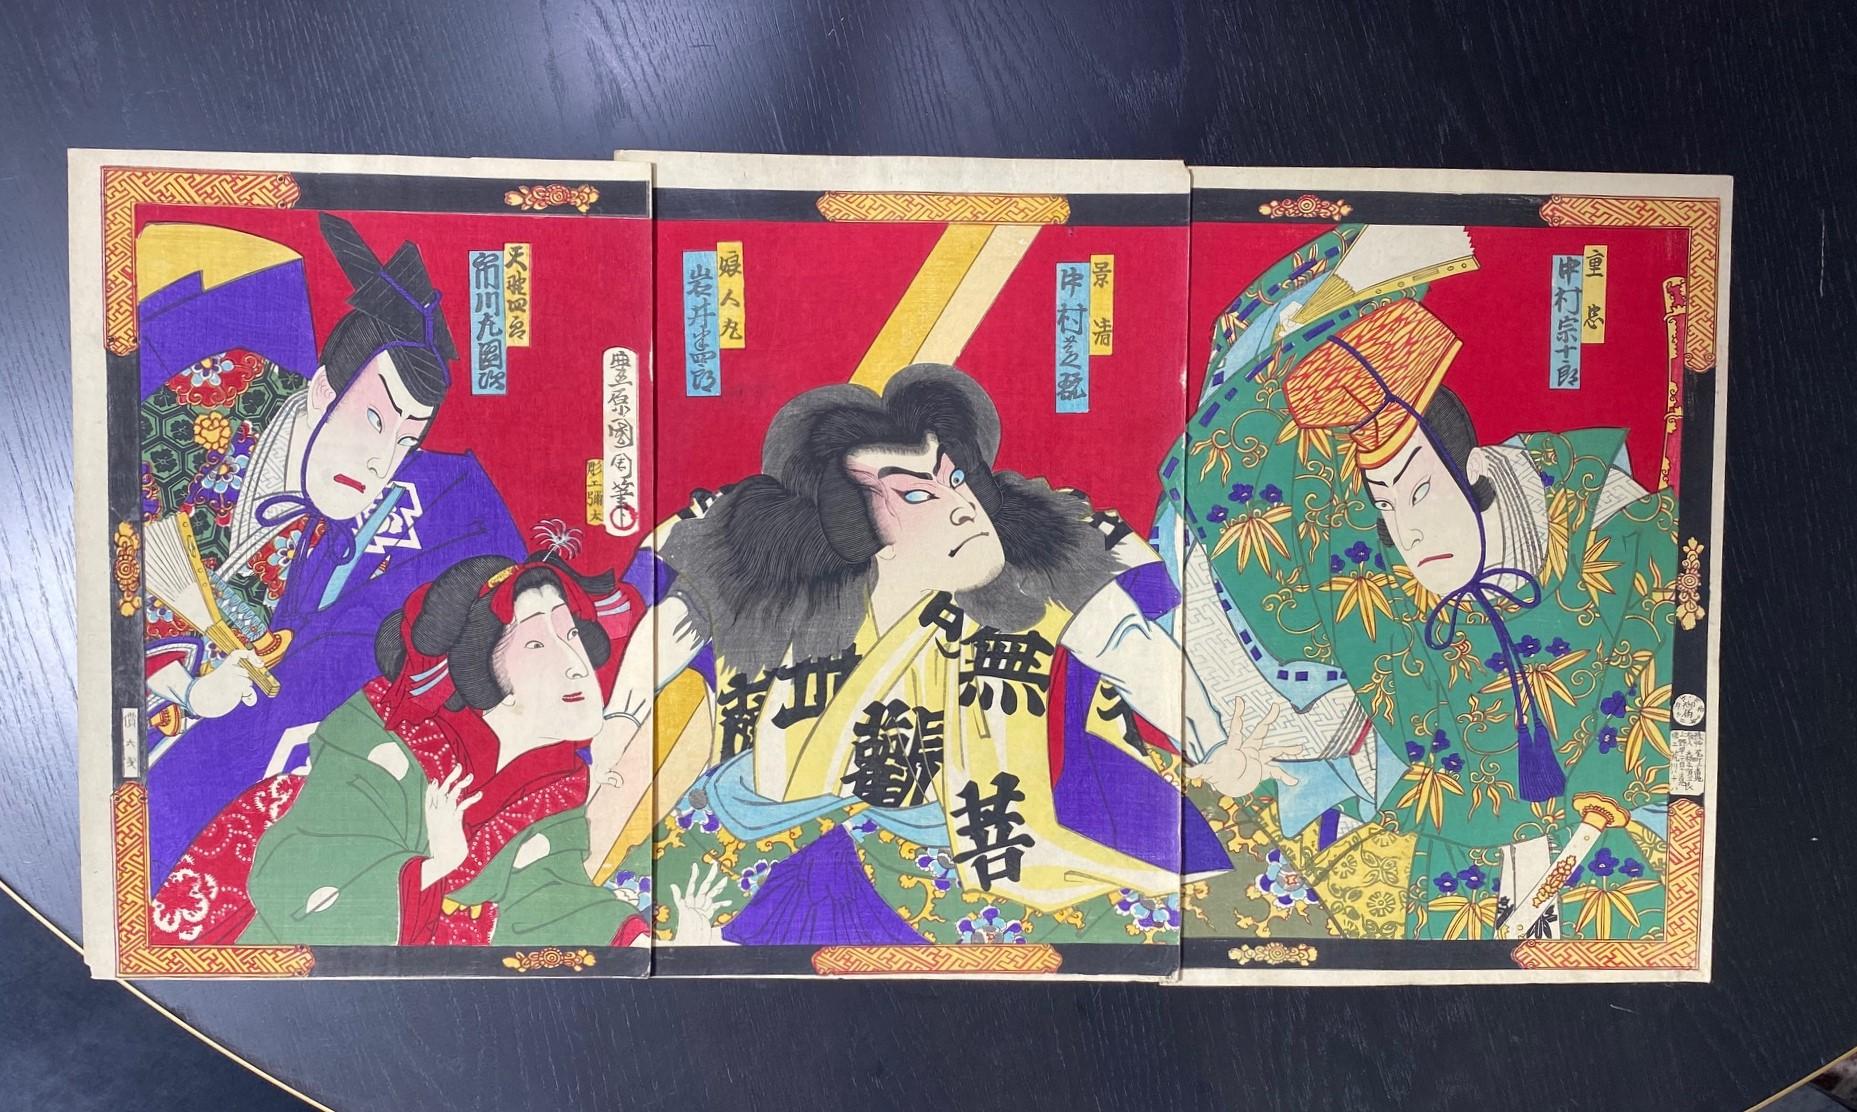 Ein wunderbar komponierter, wunderschöner und farbenprächtiger Triptychon-Holzschnitt des berühmten japanischen Künstlers Toyohara Kunichika, der vier dramatische und sehr intensive Kabuki-Theaterschauspieler zeigt.  Die auffälligen und kräftigen